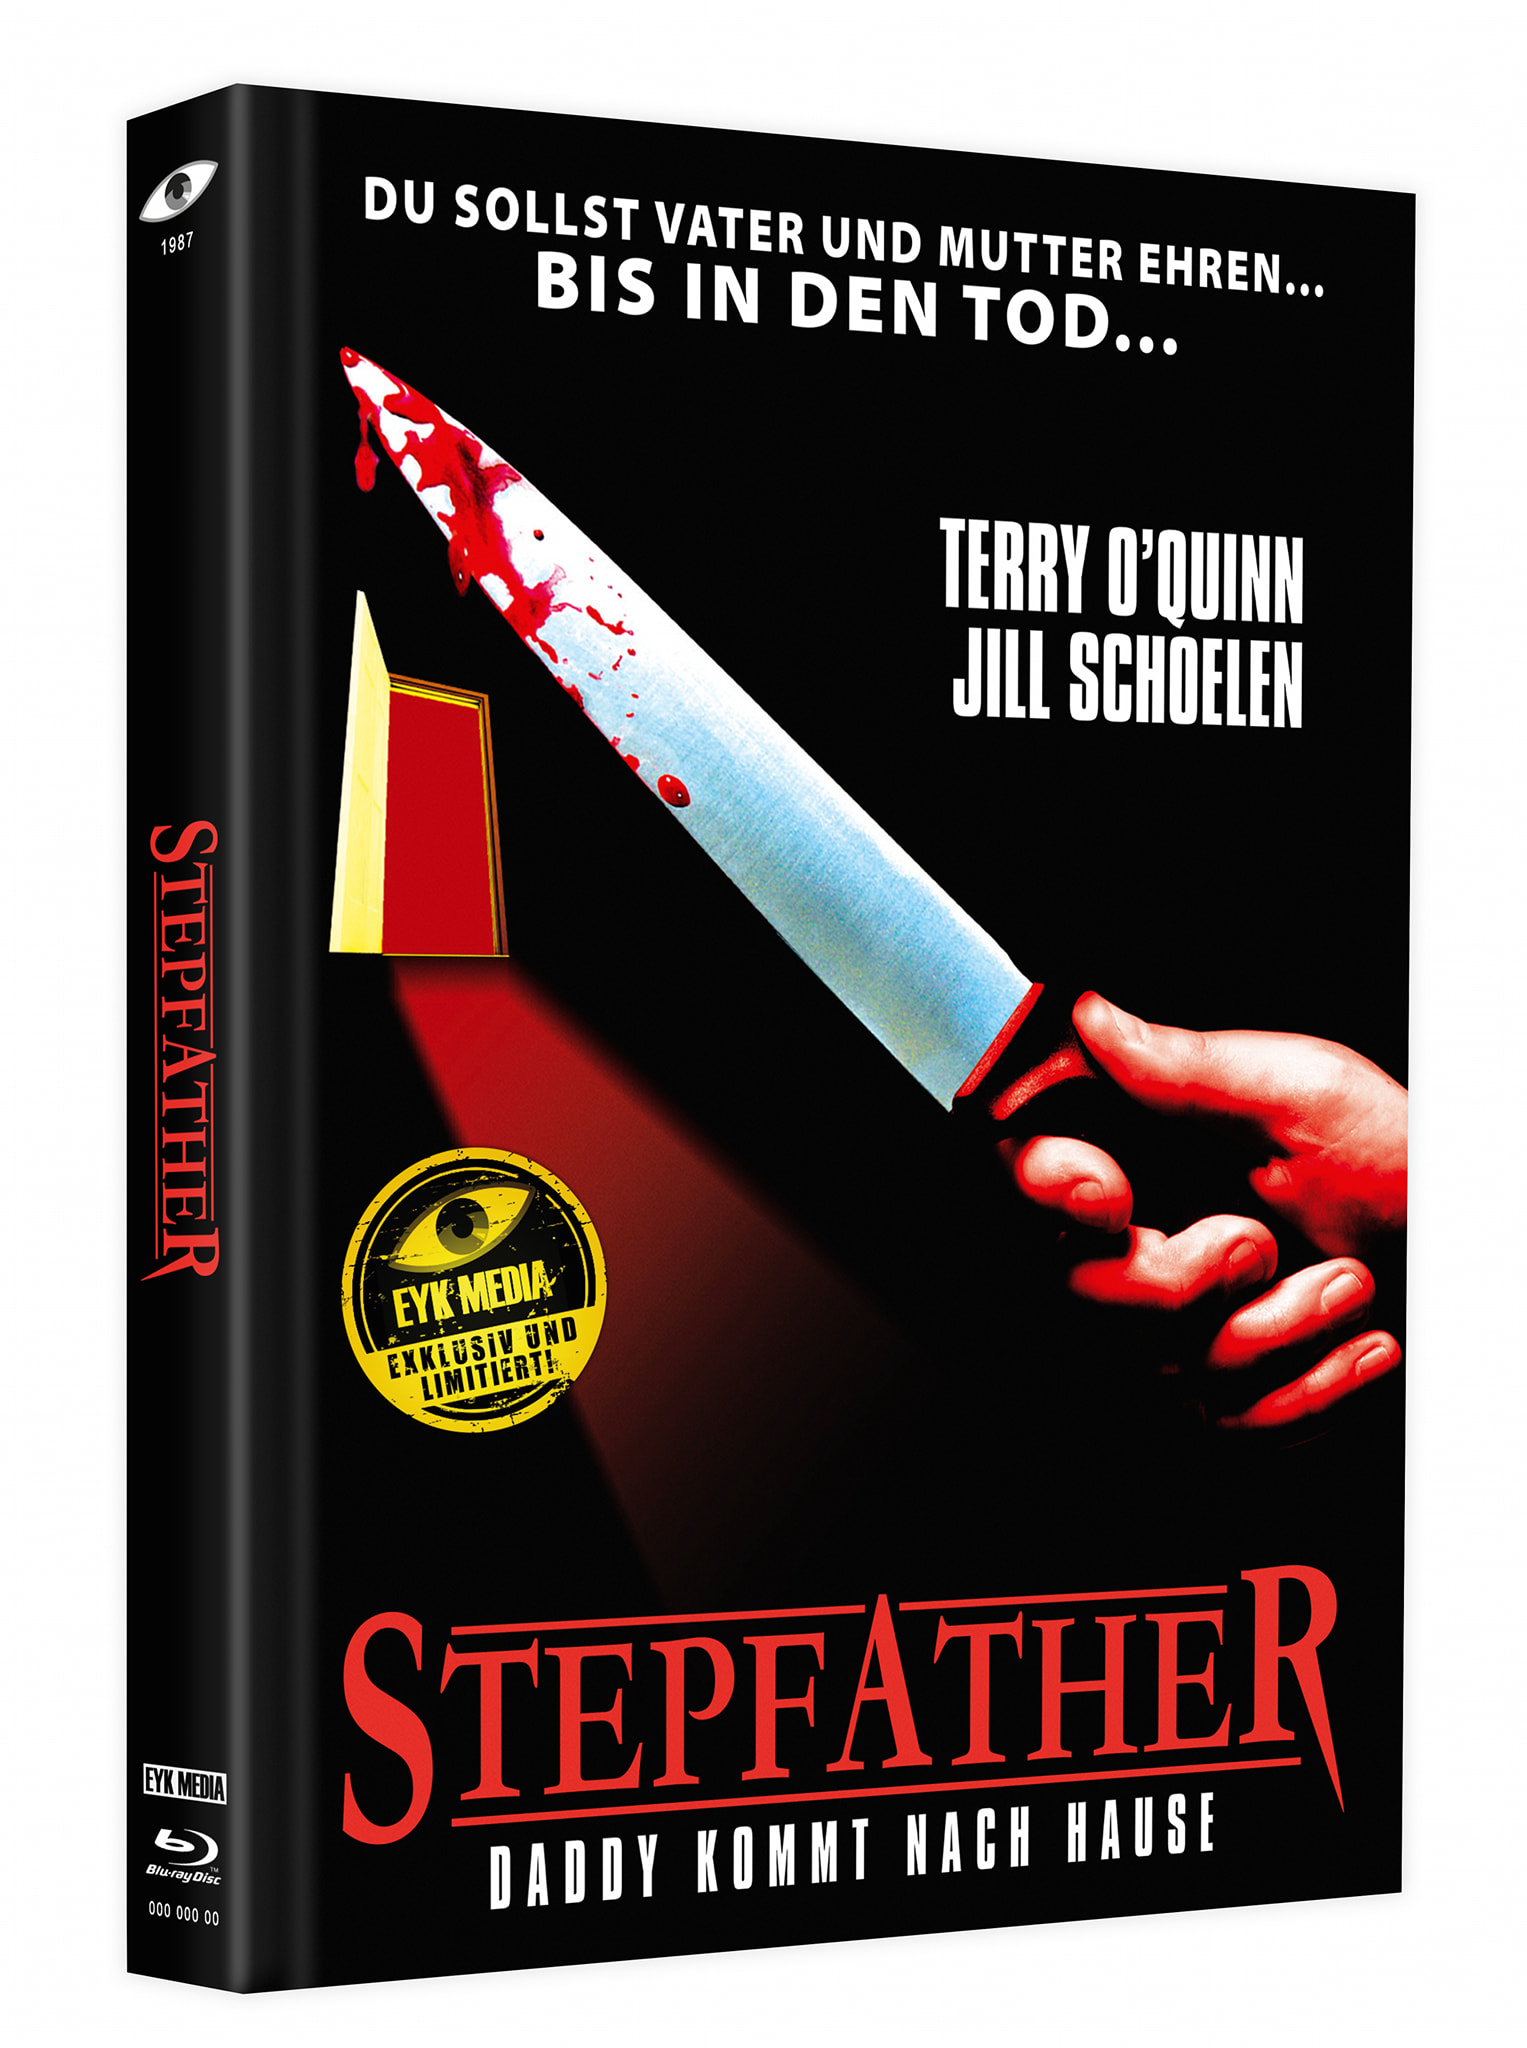 Stepfather Und Stepfather 2 Demnächst Auf Blu Ray In Limitierten Mediabooks Erhältlich Blu